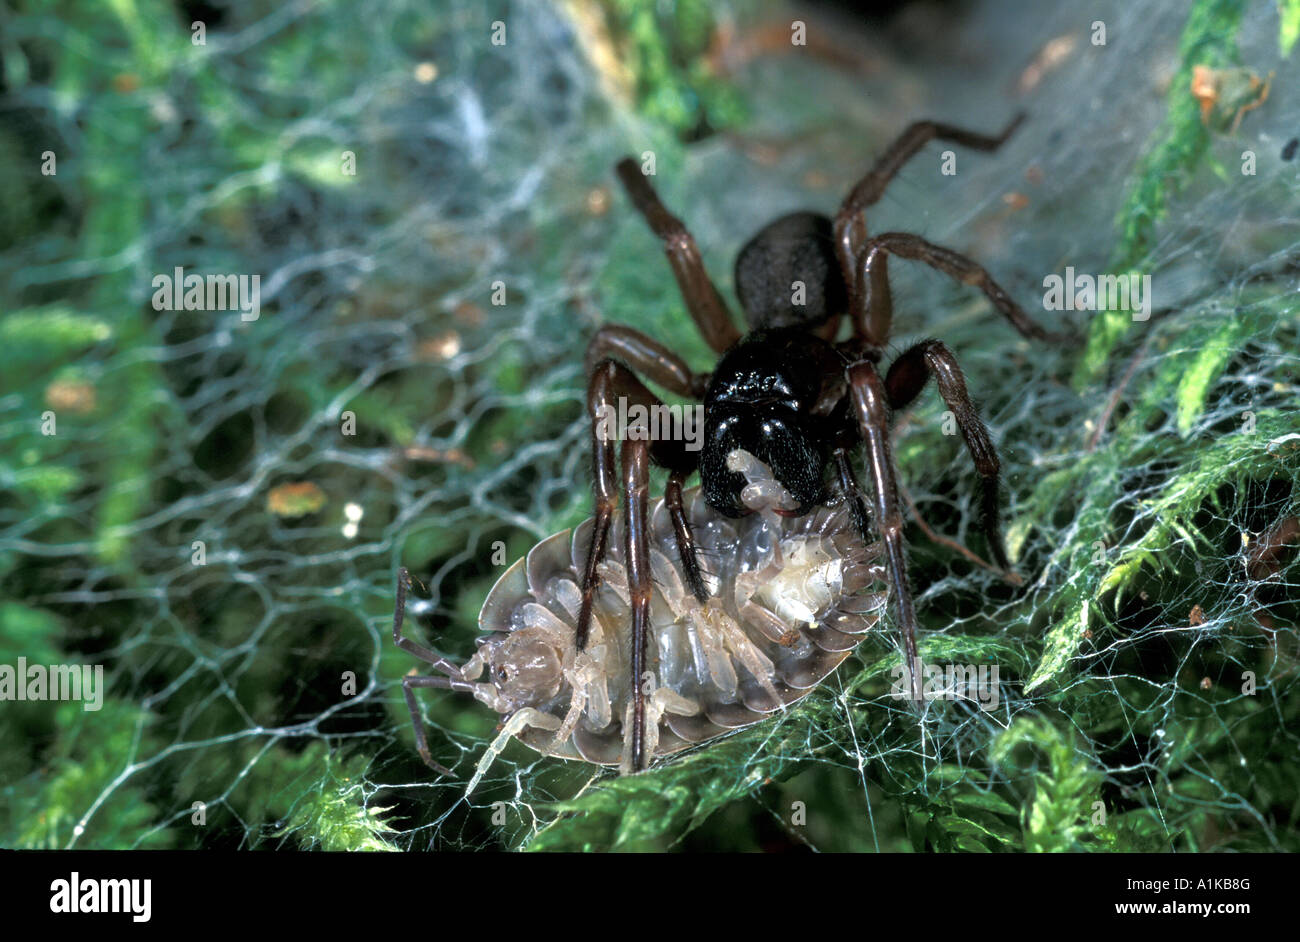 Coelotes terrestris (araignée) avec slater capturés Banque D'Images